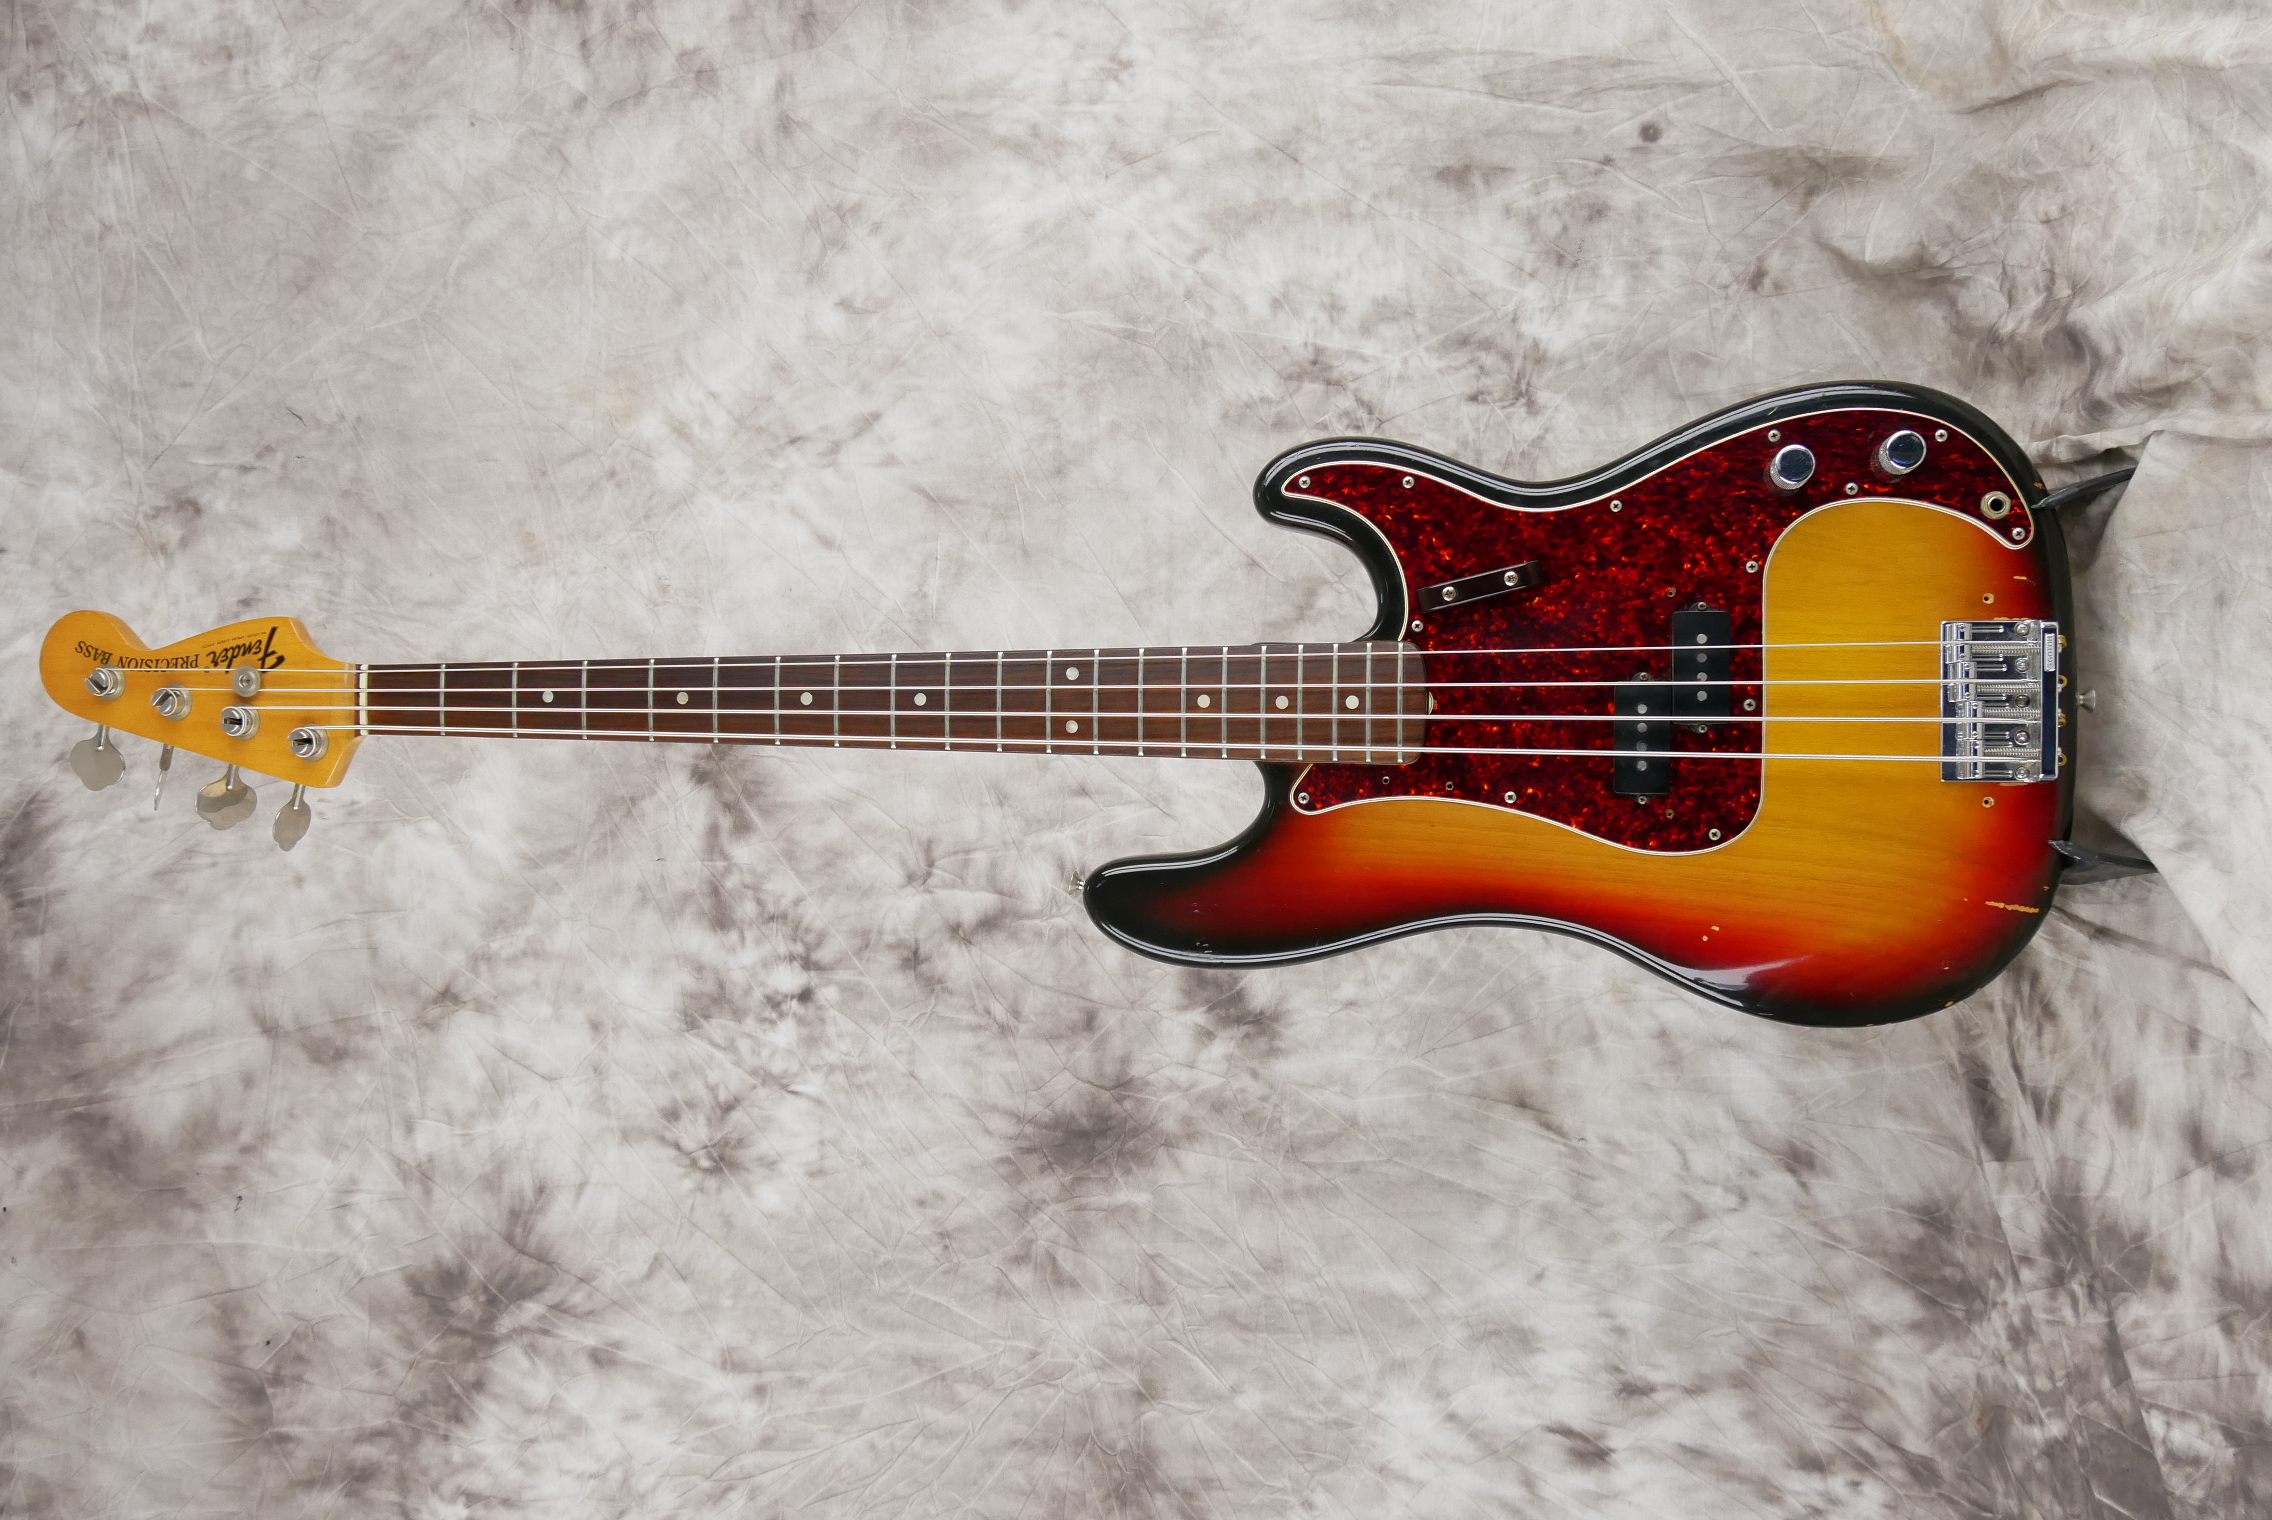 Fender-Precision-Bass-1973-sunburst-001.JPG